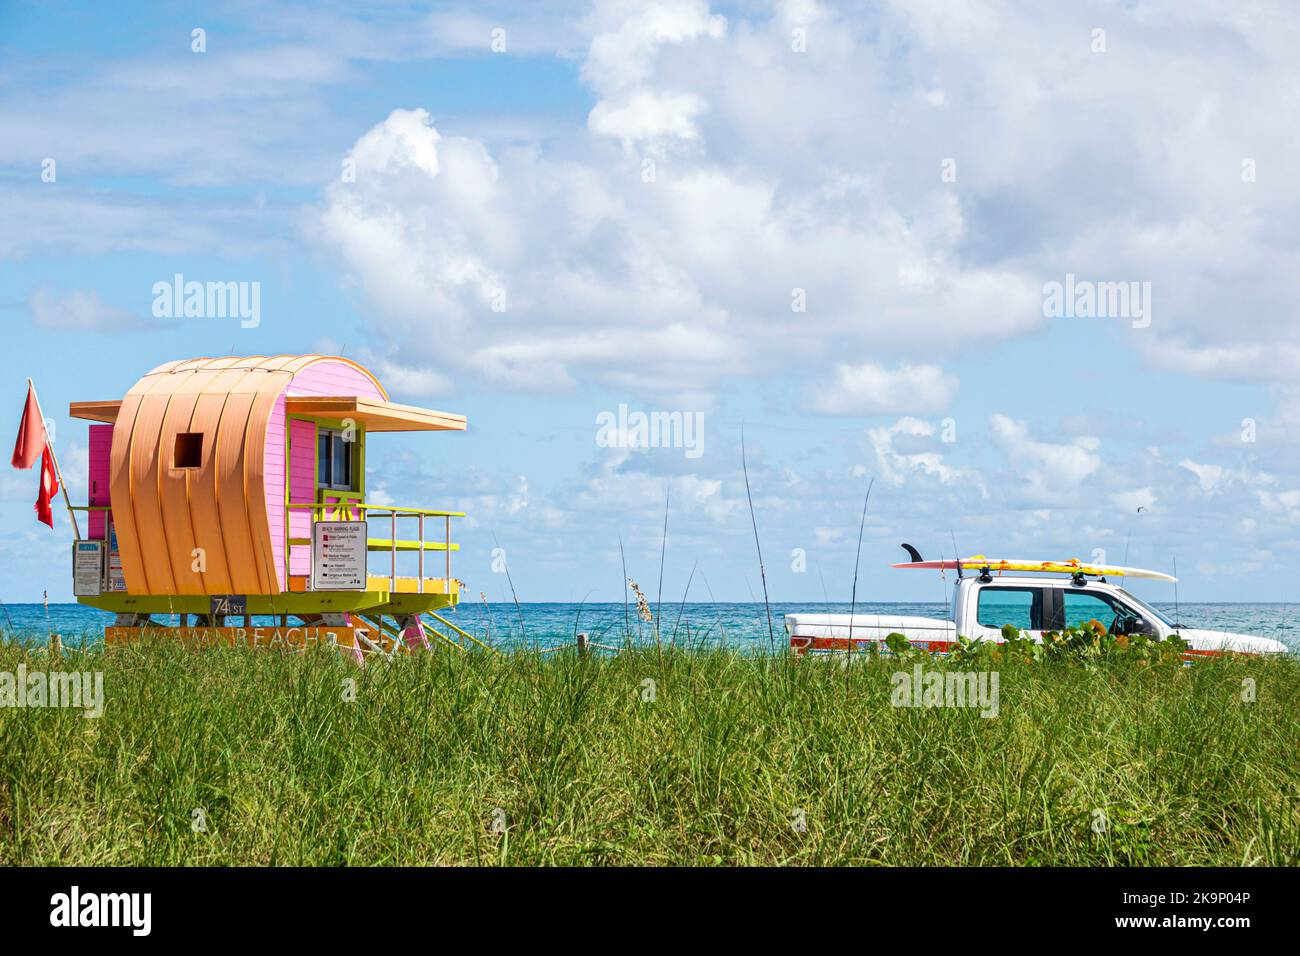 Miami Beach Florida,North Beach Ocean Terrace station de sauveteurs tour plage patrouille camion de ramassage garé surf,océan Atlantique dune herbe bleu ciel cl Banque D'Images